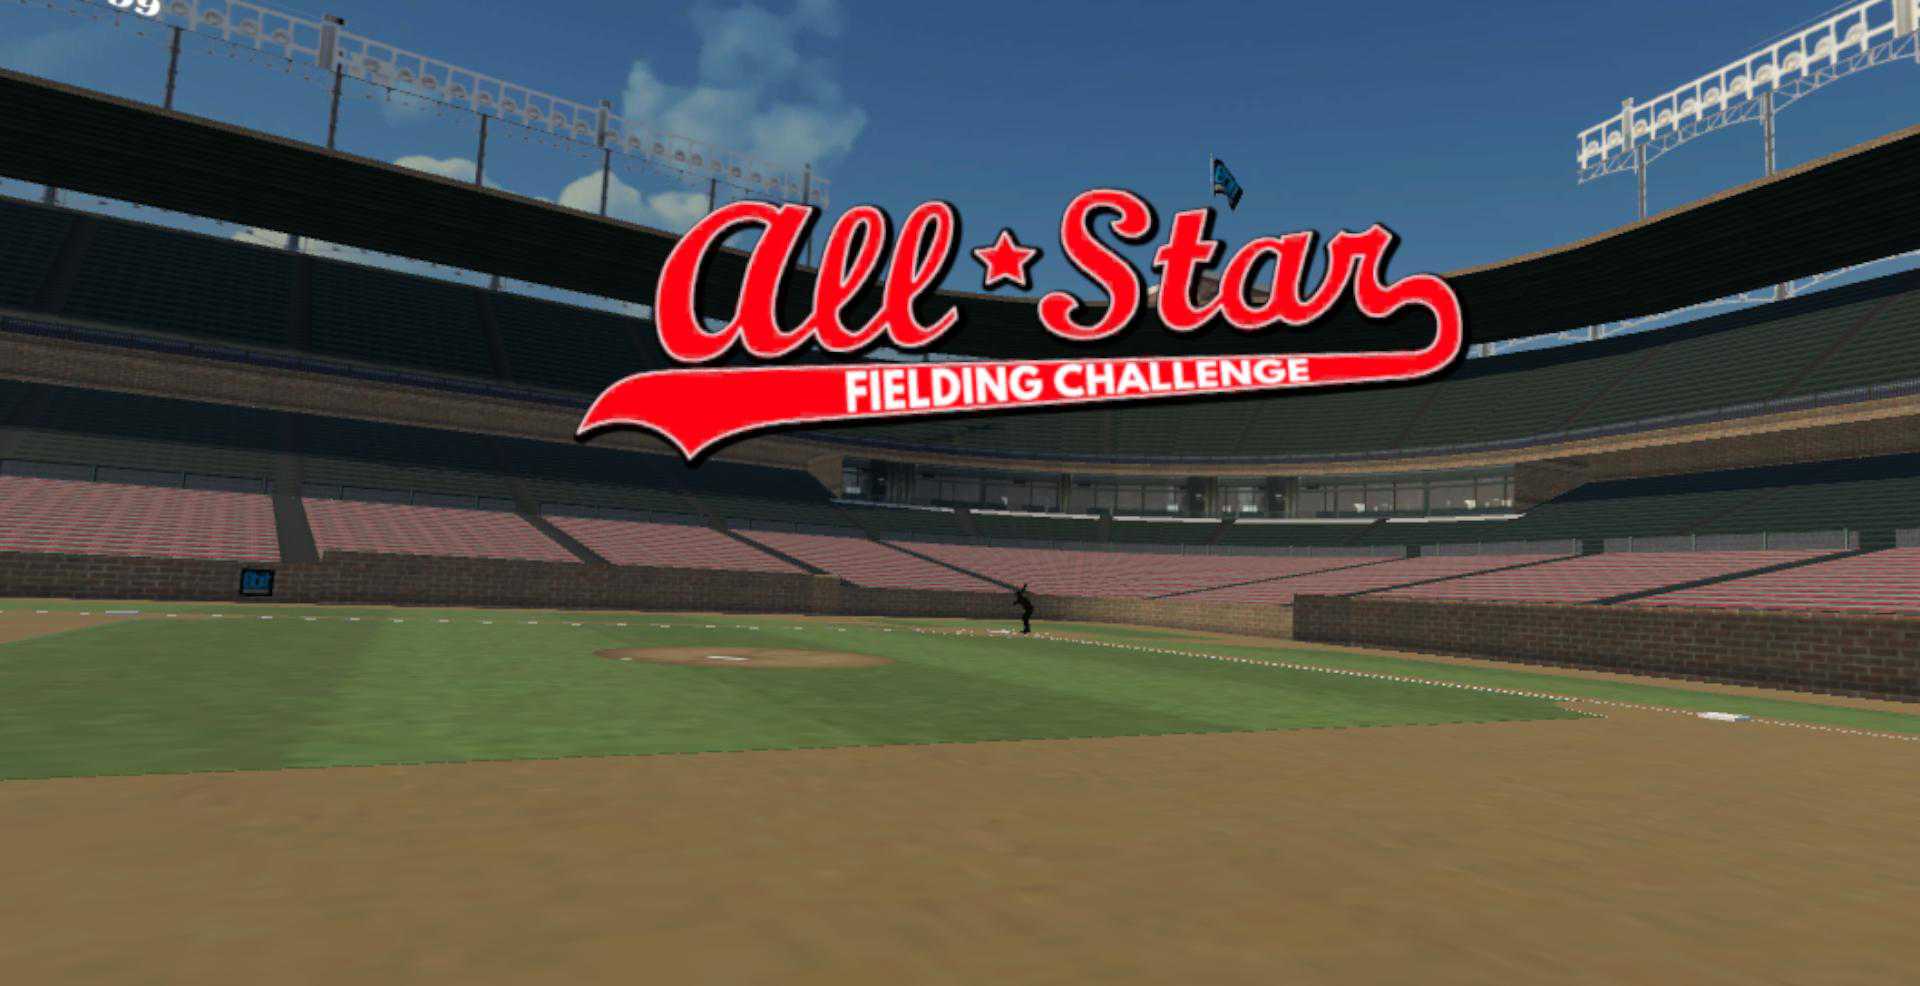 All Star Fielding Challenge